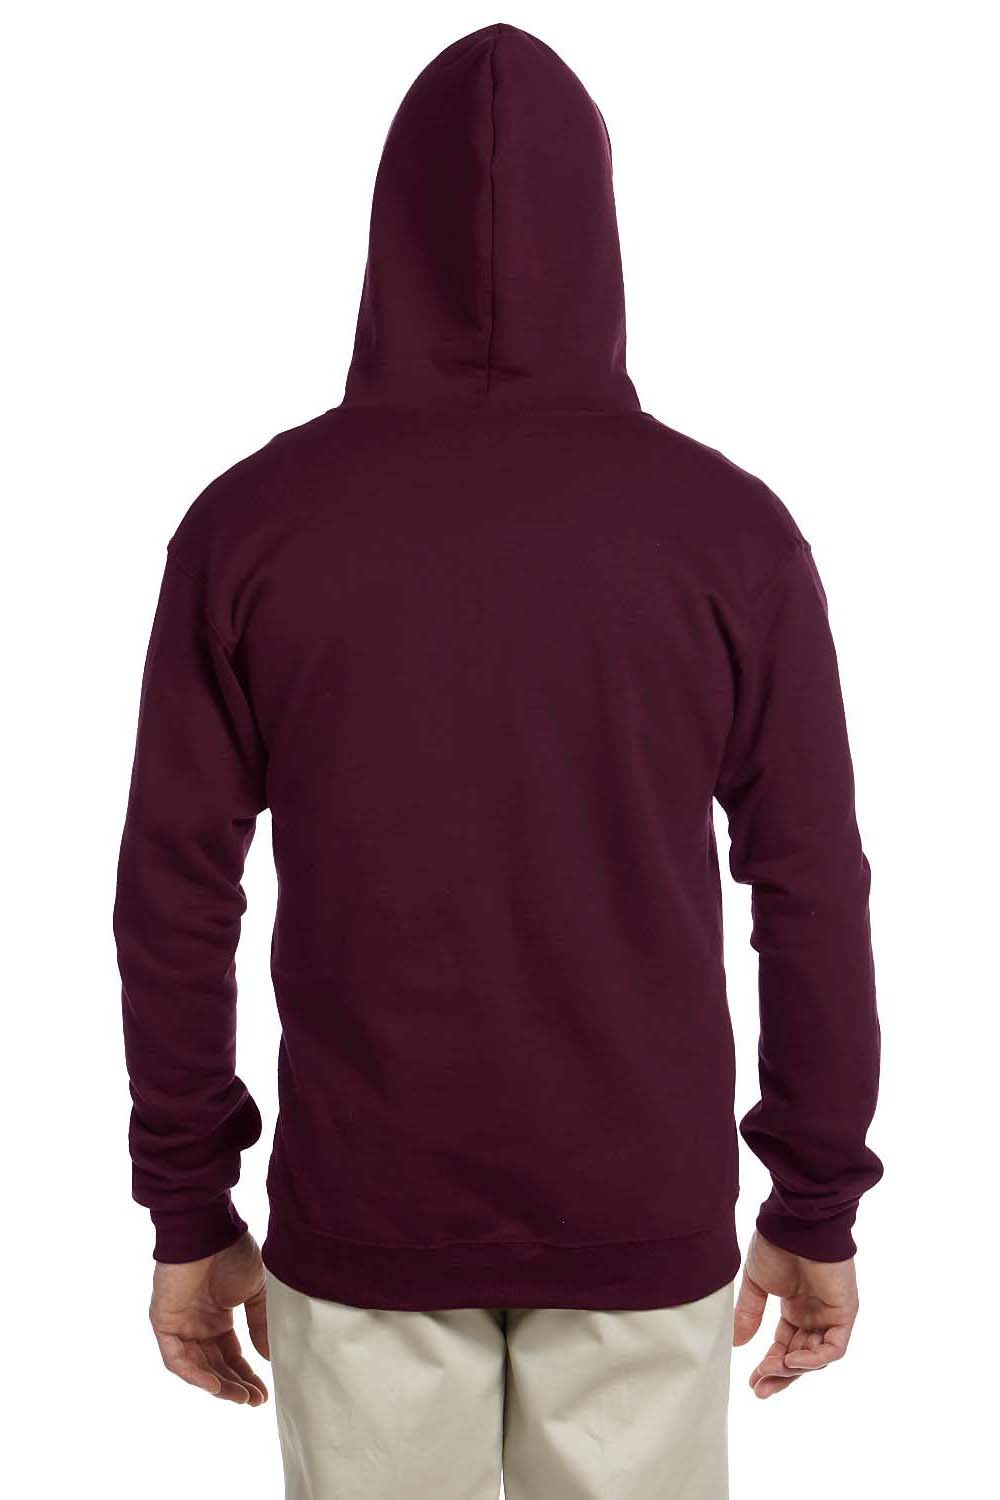 Jerzees 993 Mens NuBlend Fleece Full Zip Hooded Sweatshirt Hoodie Maroon Back